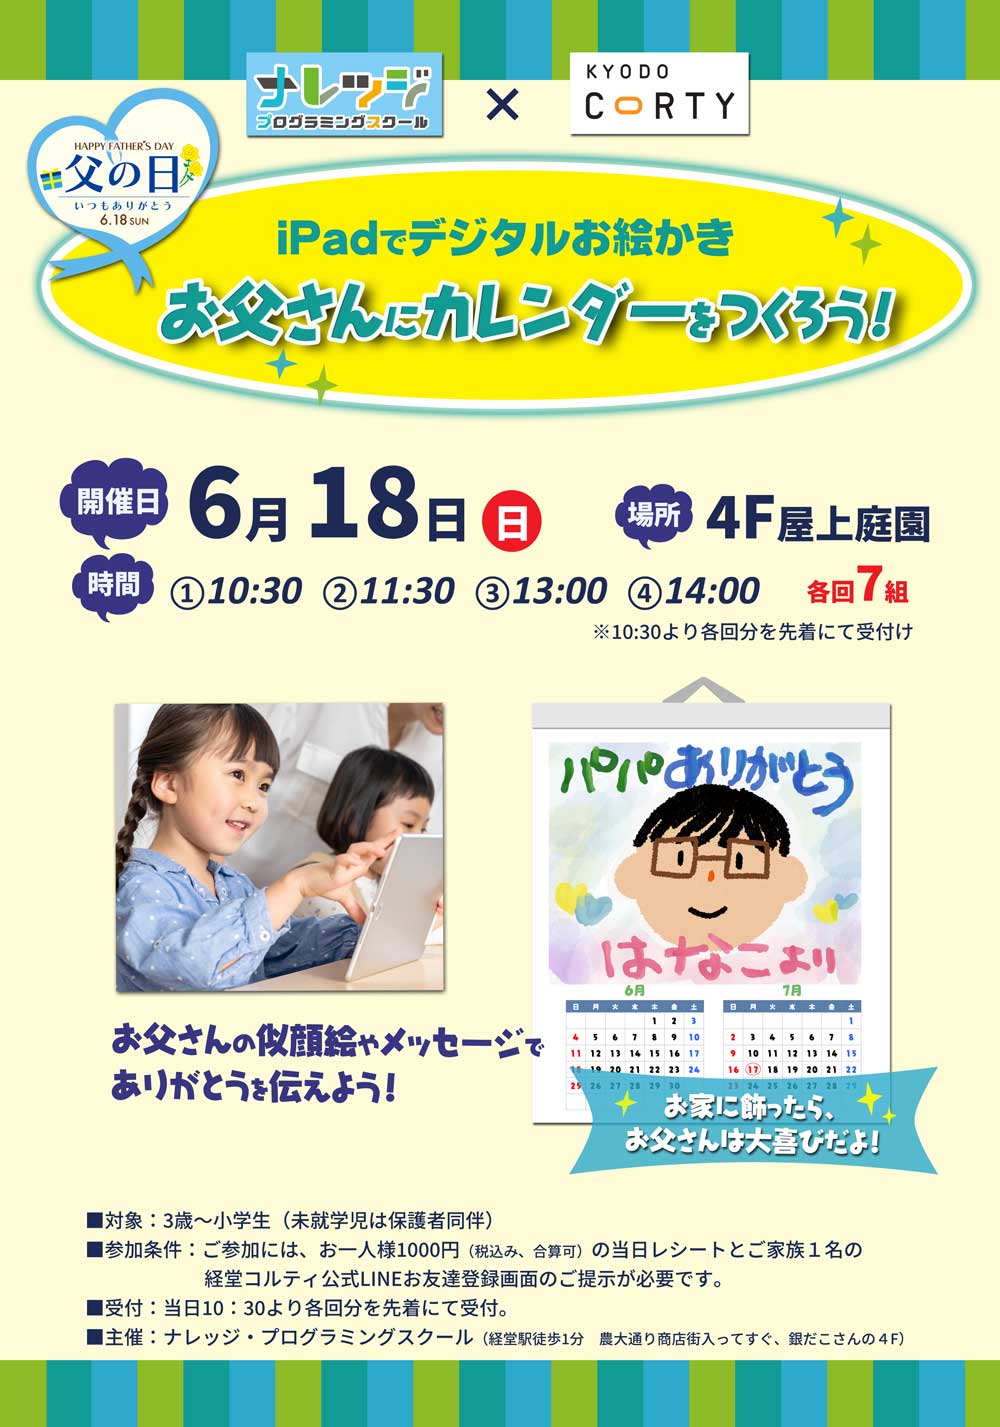 6月18日（日）経堂コルティで父の日イベント「iPadでお父さんカレンダーを作ろう」開催します！みんな遊びにきてね♪